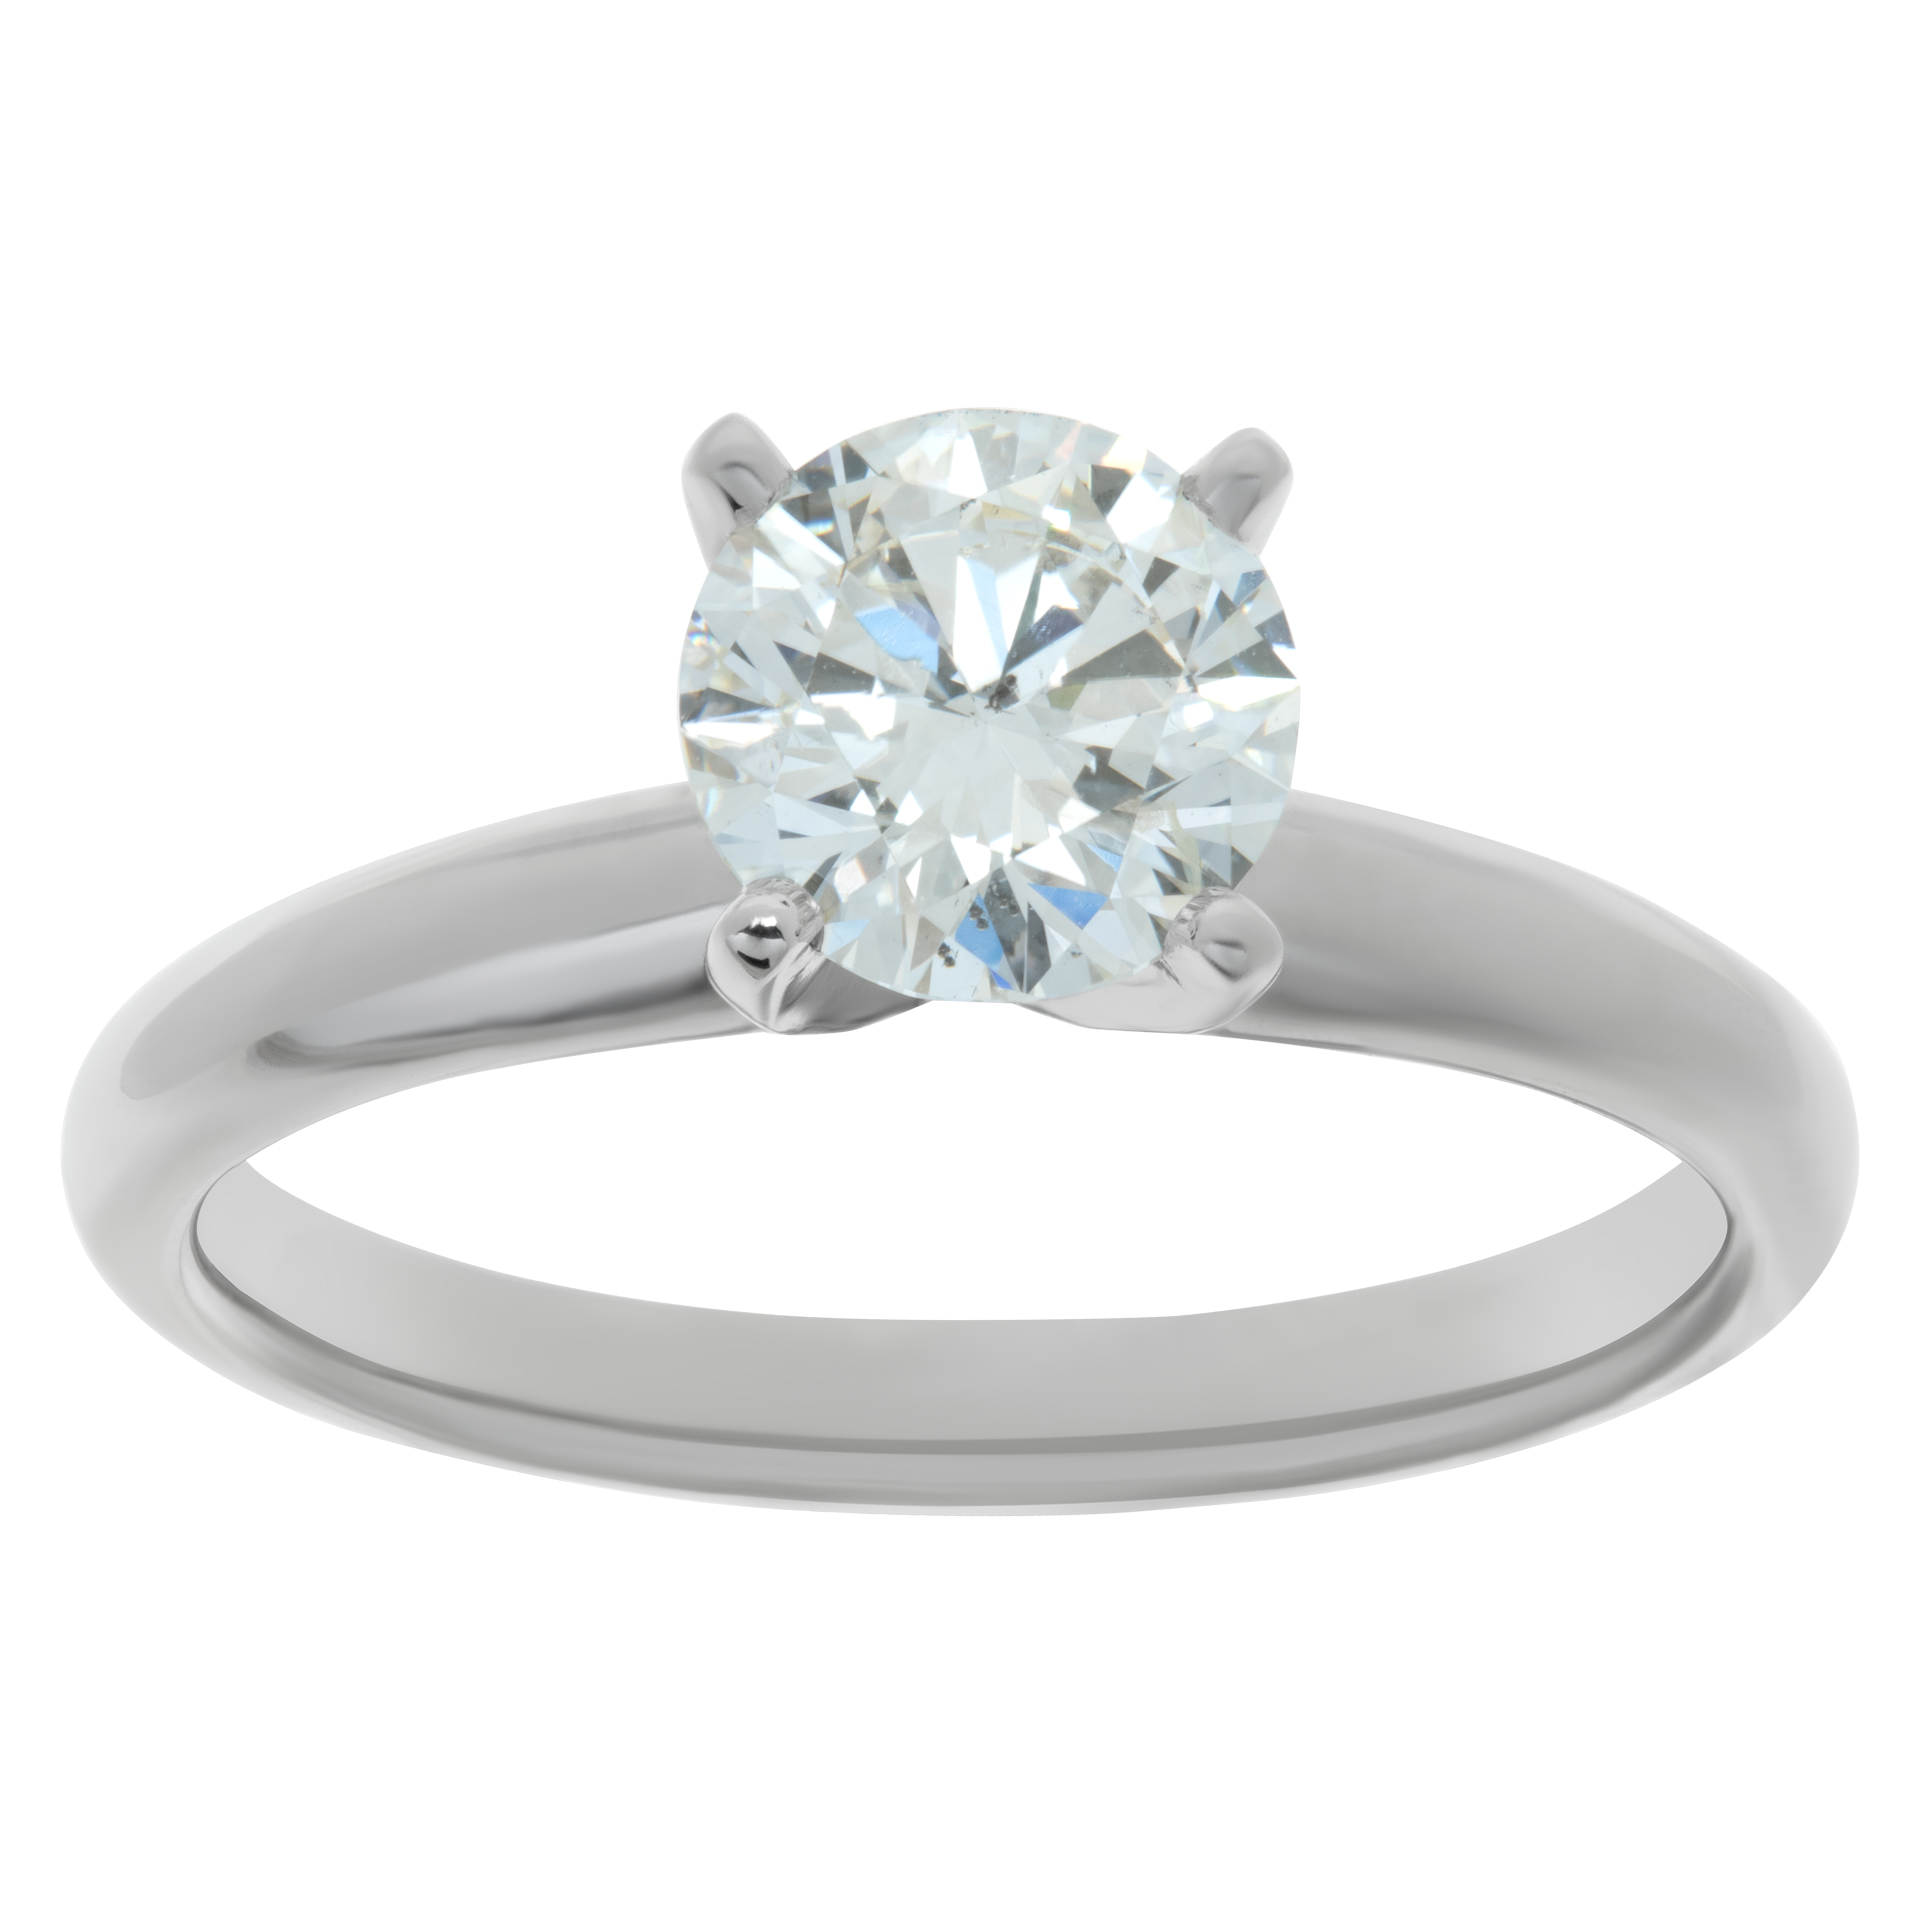 GIA certified round brilliant cut diamond 1.14 carat (H color, I1 clarity, Excellent cut, Excellent polish, Excellent symmetry) image 1